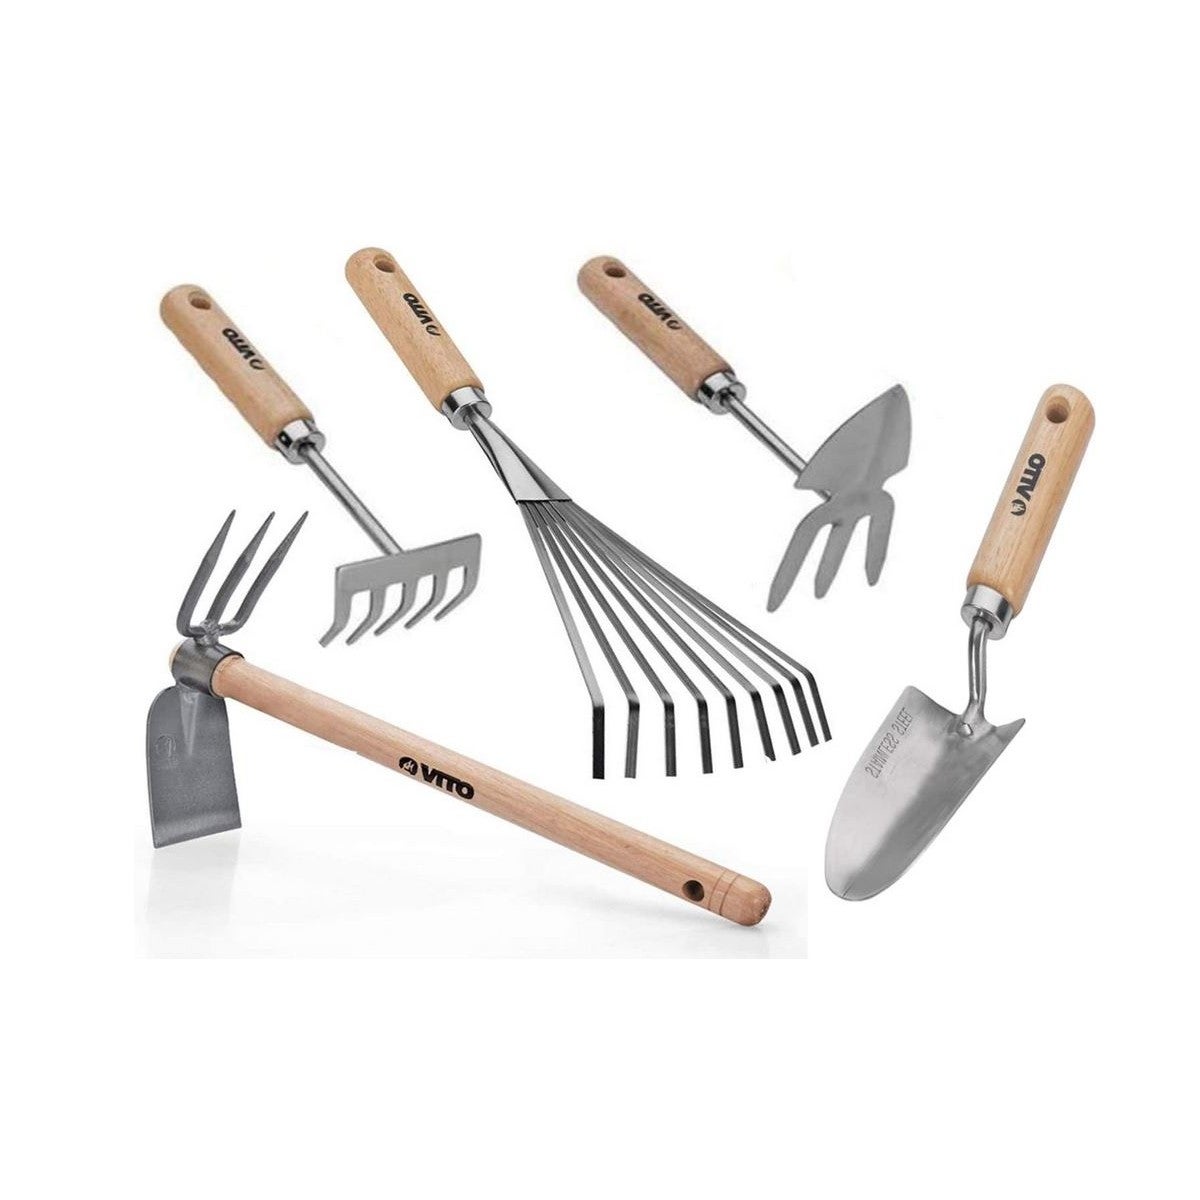 Kit 5 outils de jardin Manche bois Inox et Fer forgés à la main haute  qualité traditionnelle VITO